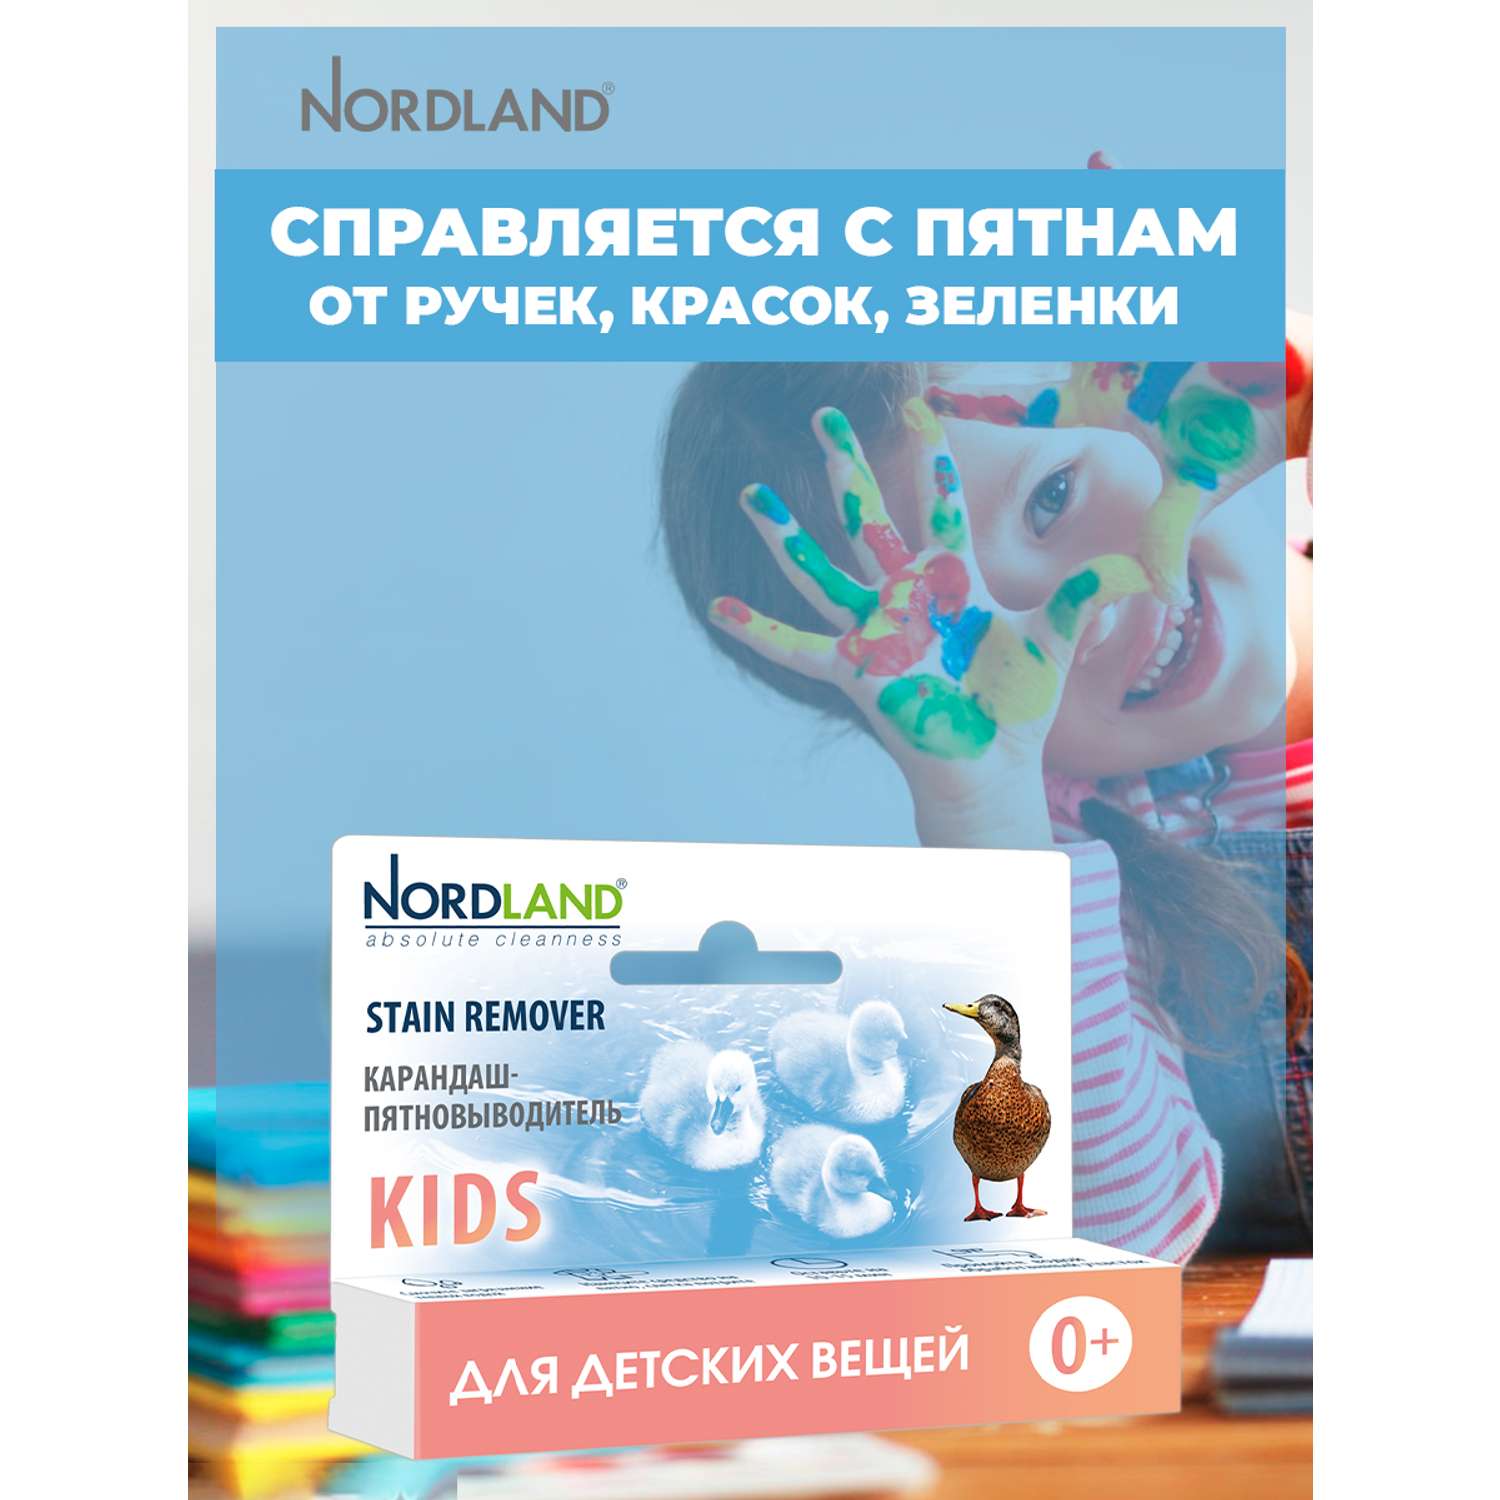 Карандаш-пятновыводитель Nordland для детских вещей - фото 5